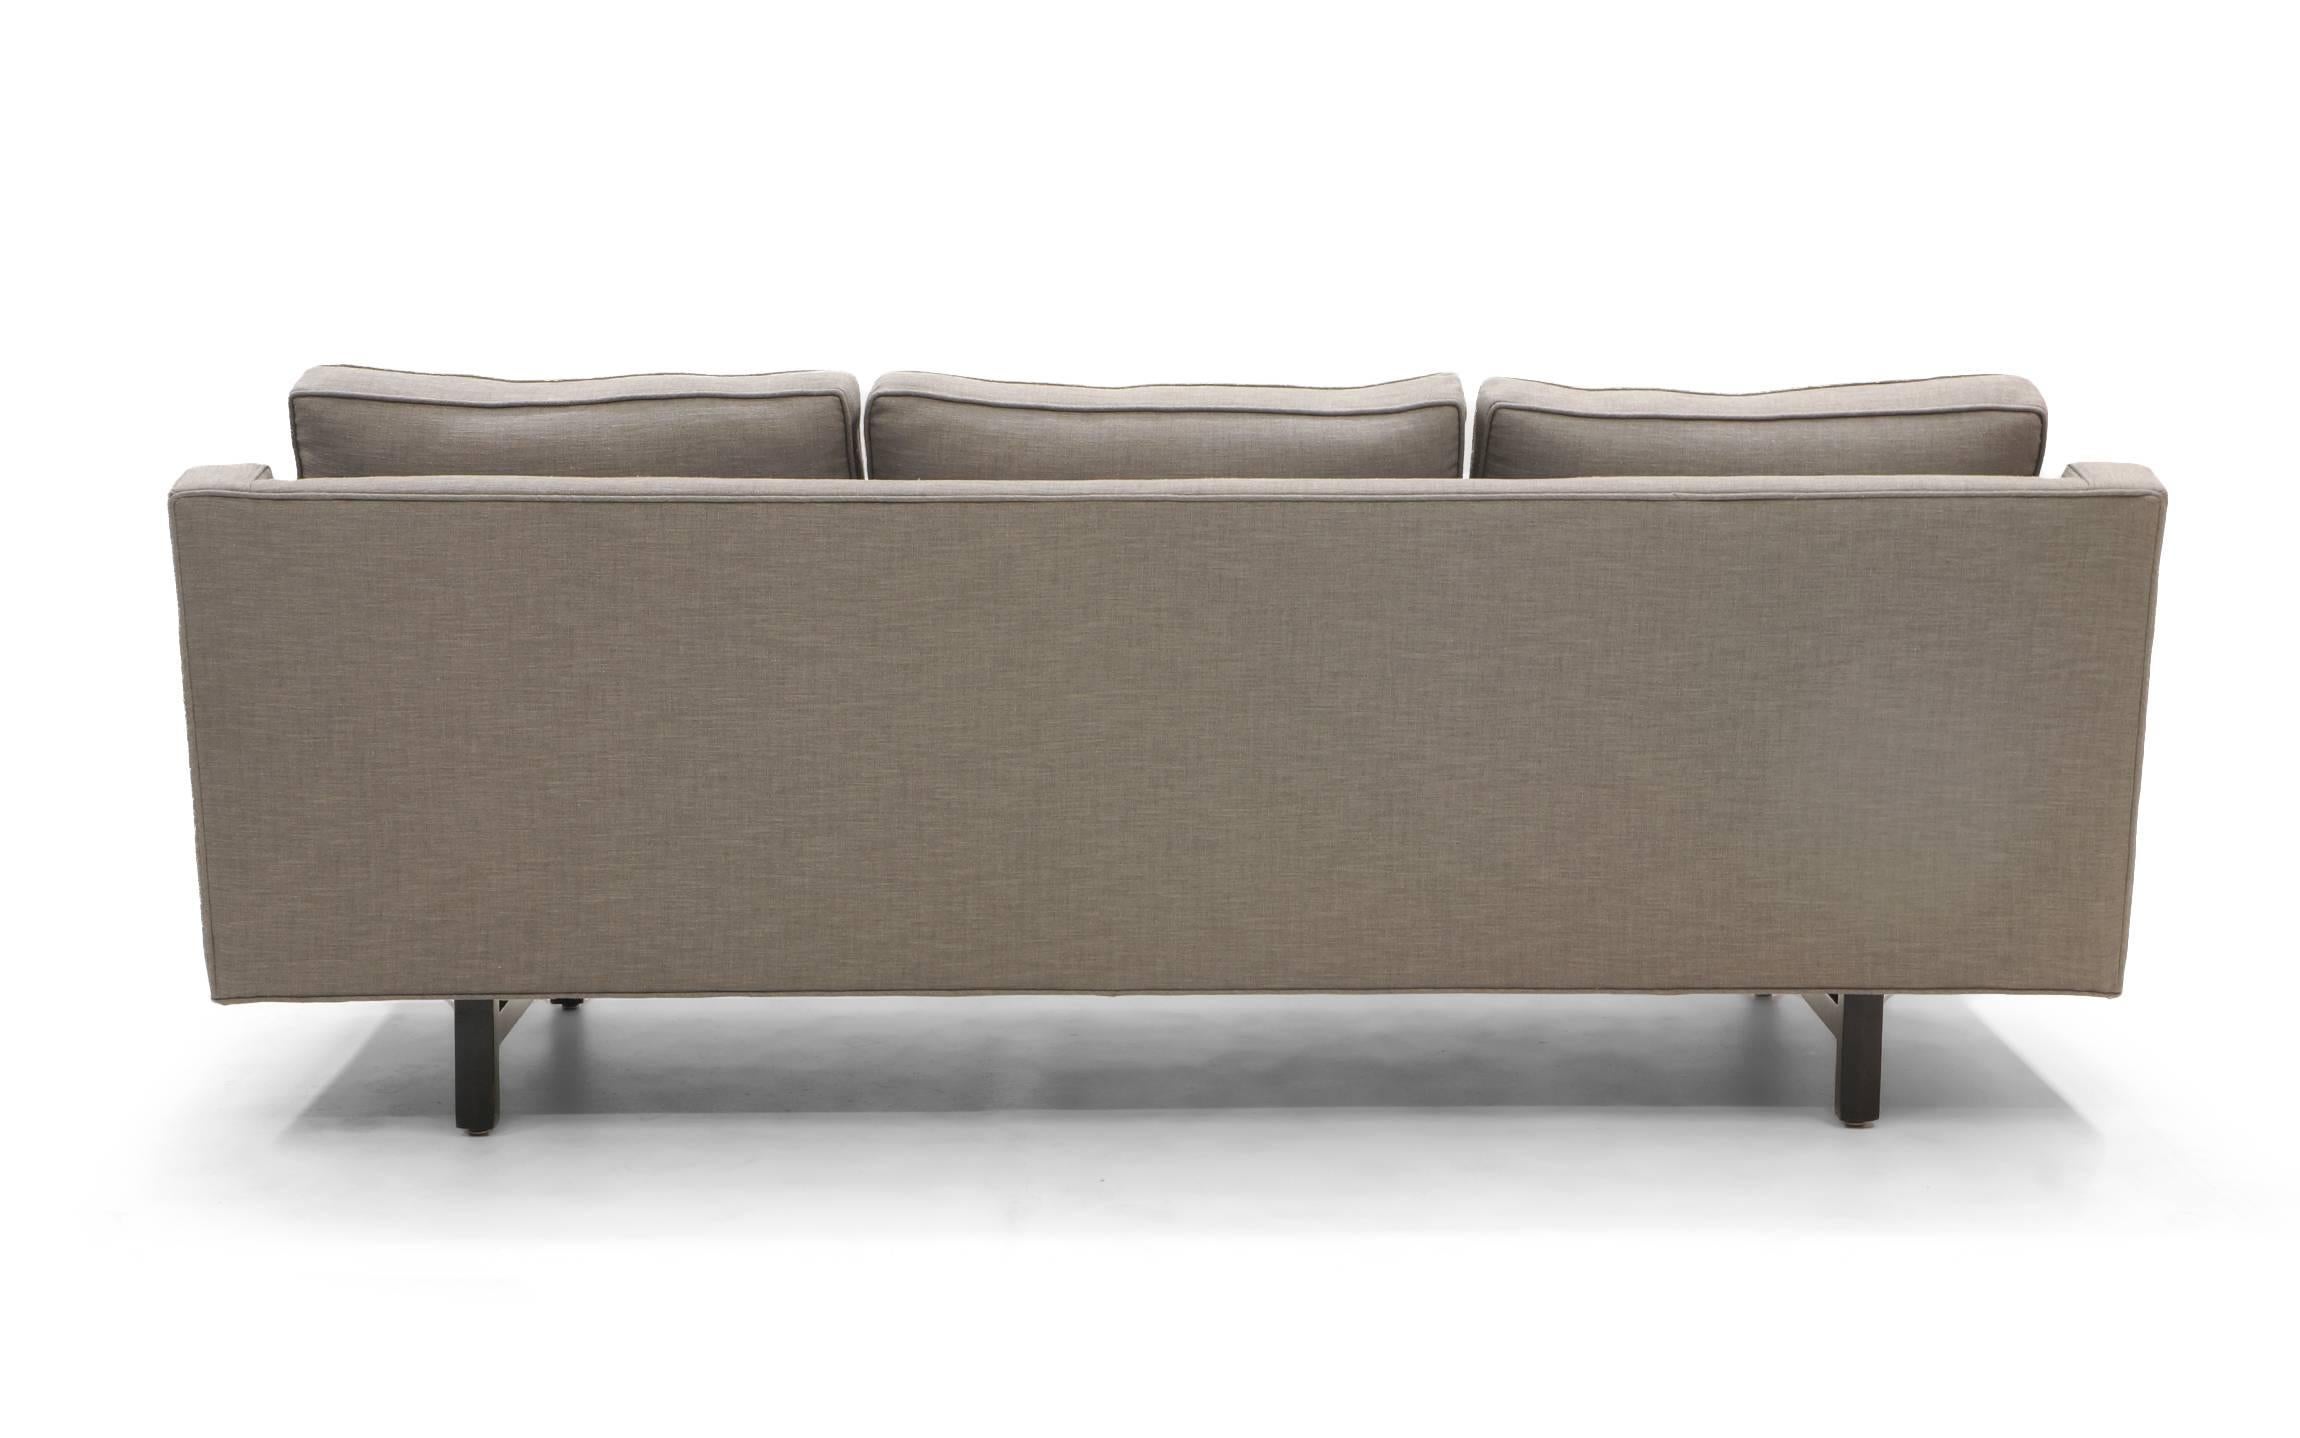 Three-Seat Sofa by Edward Wormley for Dunbar, Fully Restored, Like New 3